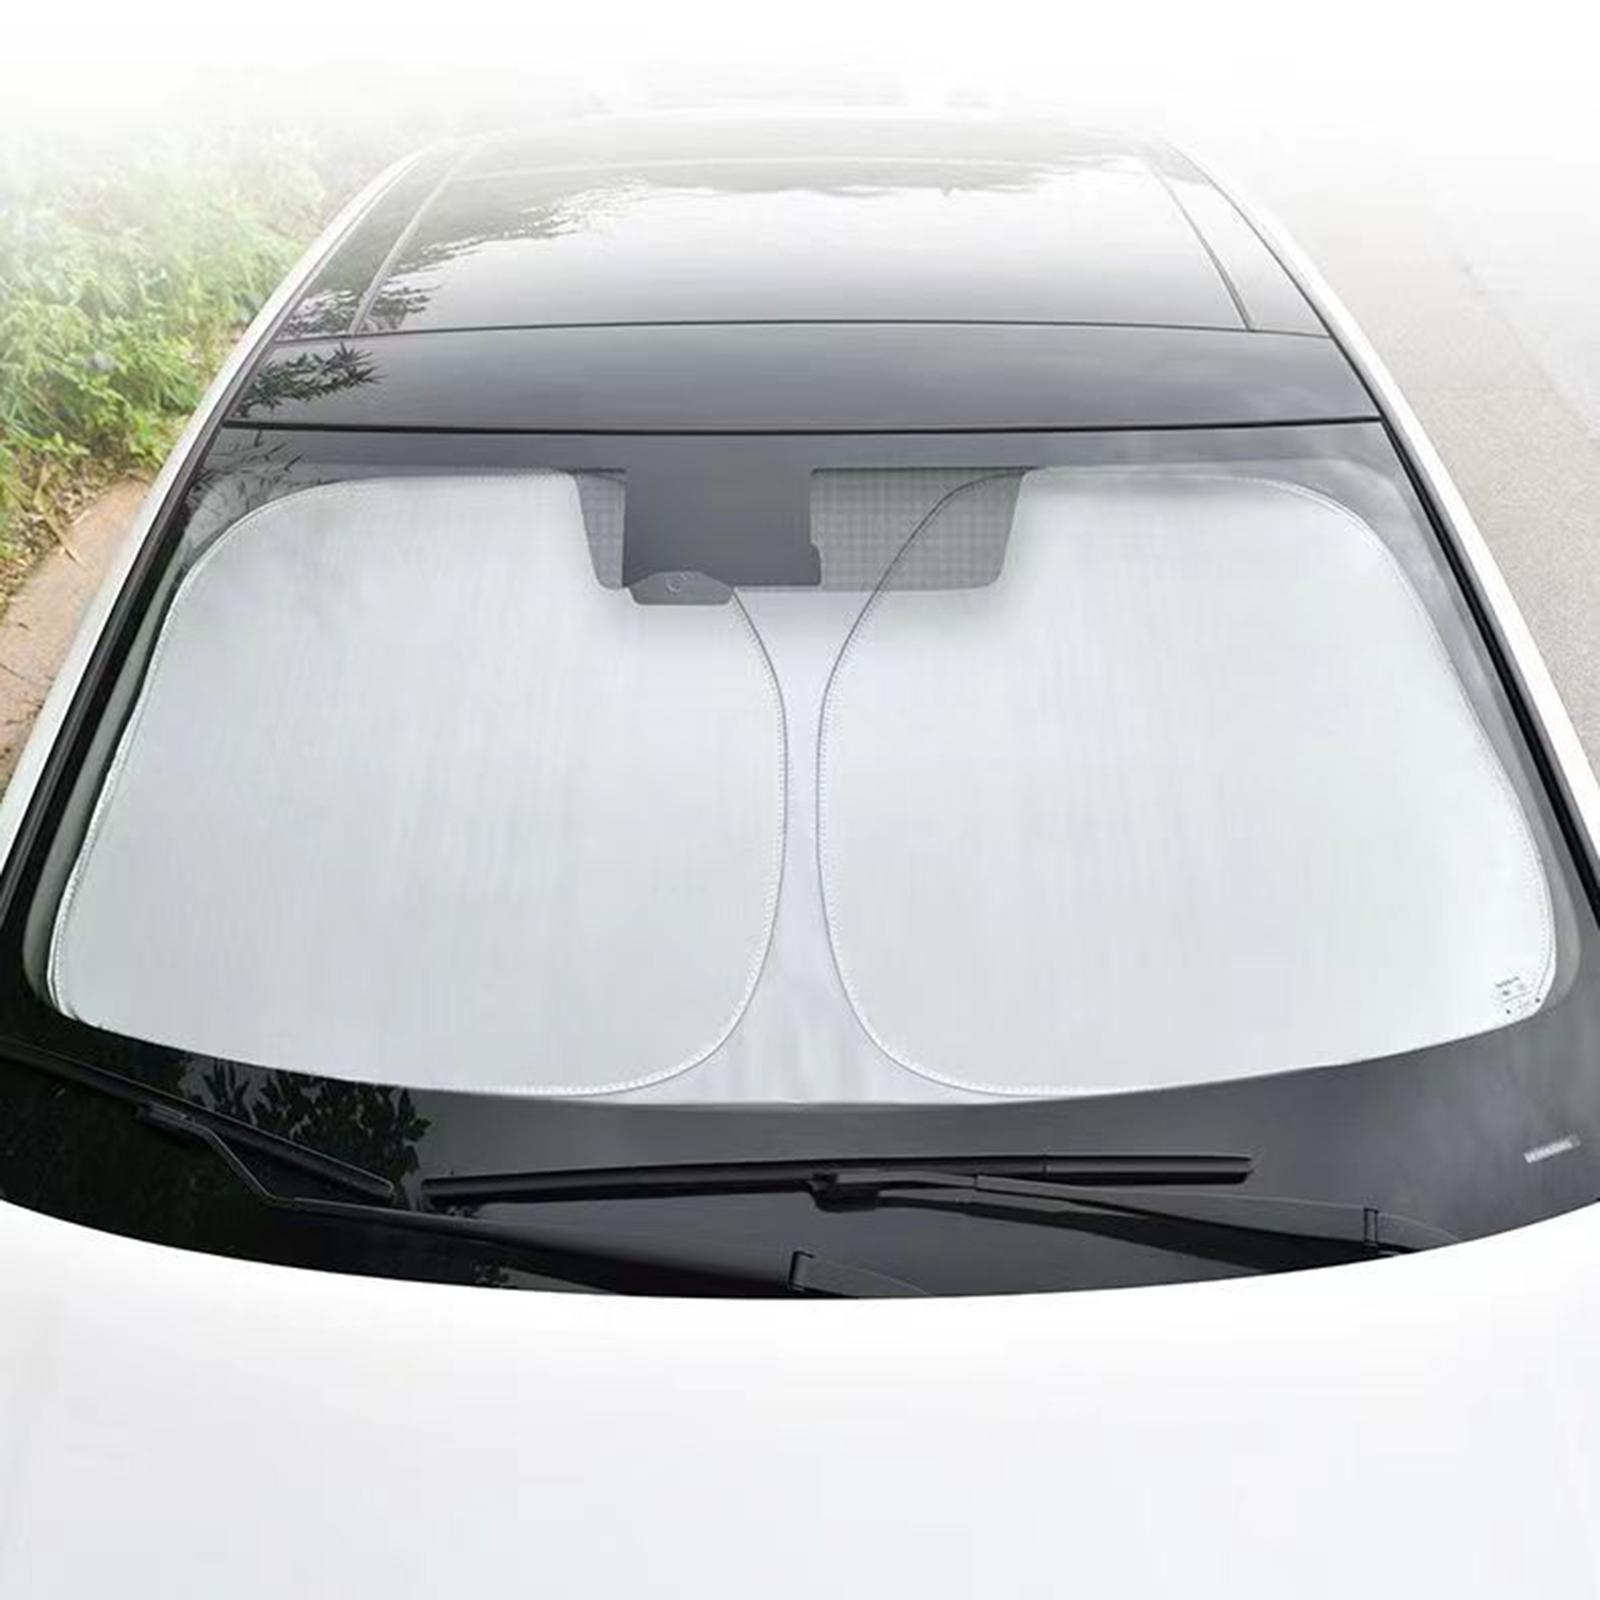 Sun Visor Protector Car Windshield Sun Shade 140cmx70cm